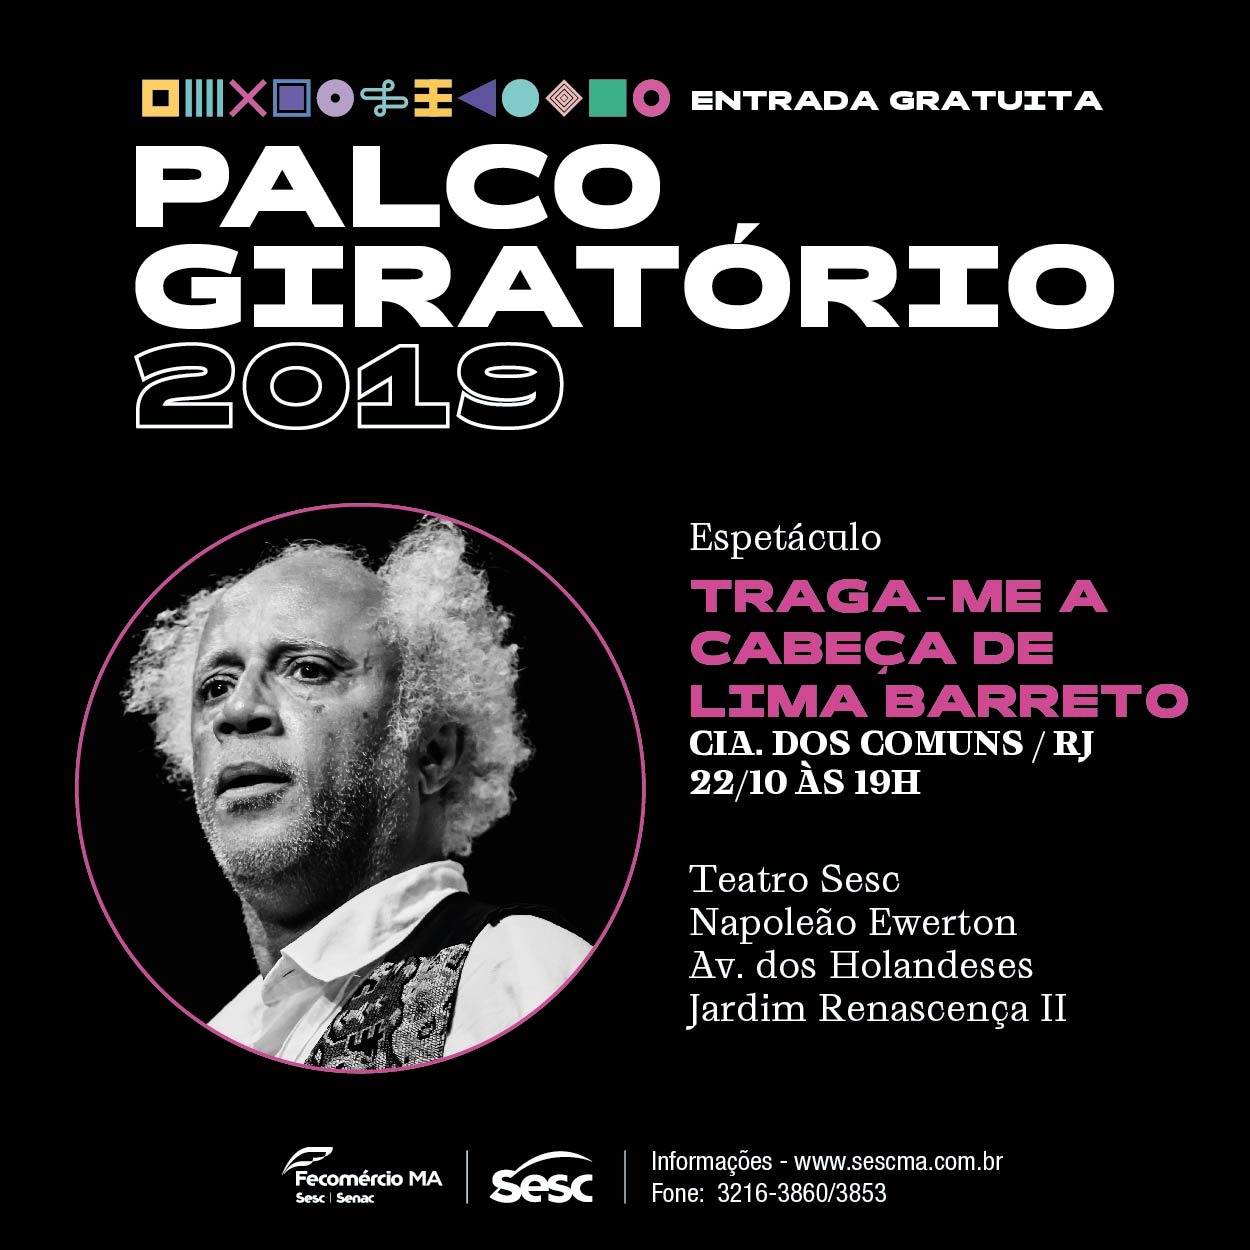 Palco Giratório apresenta o espetáculo “Traga-me a cabeça de Lima Barreto” no Teatro Sesc